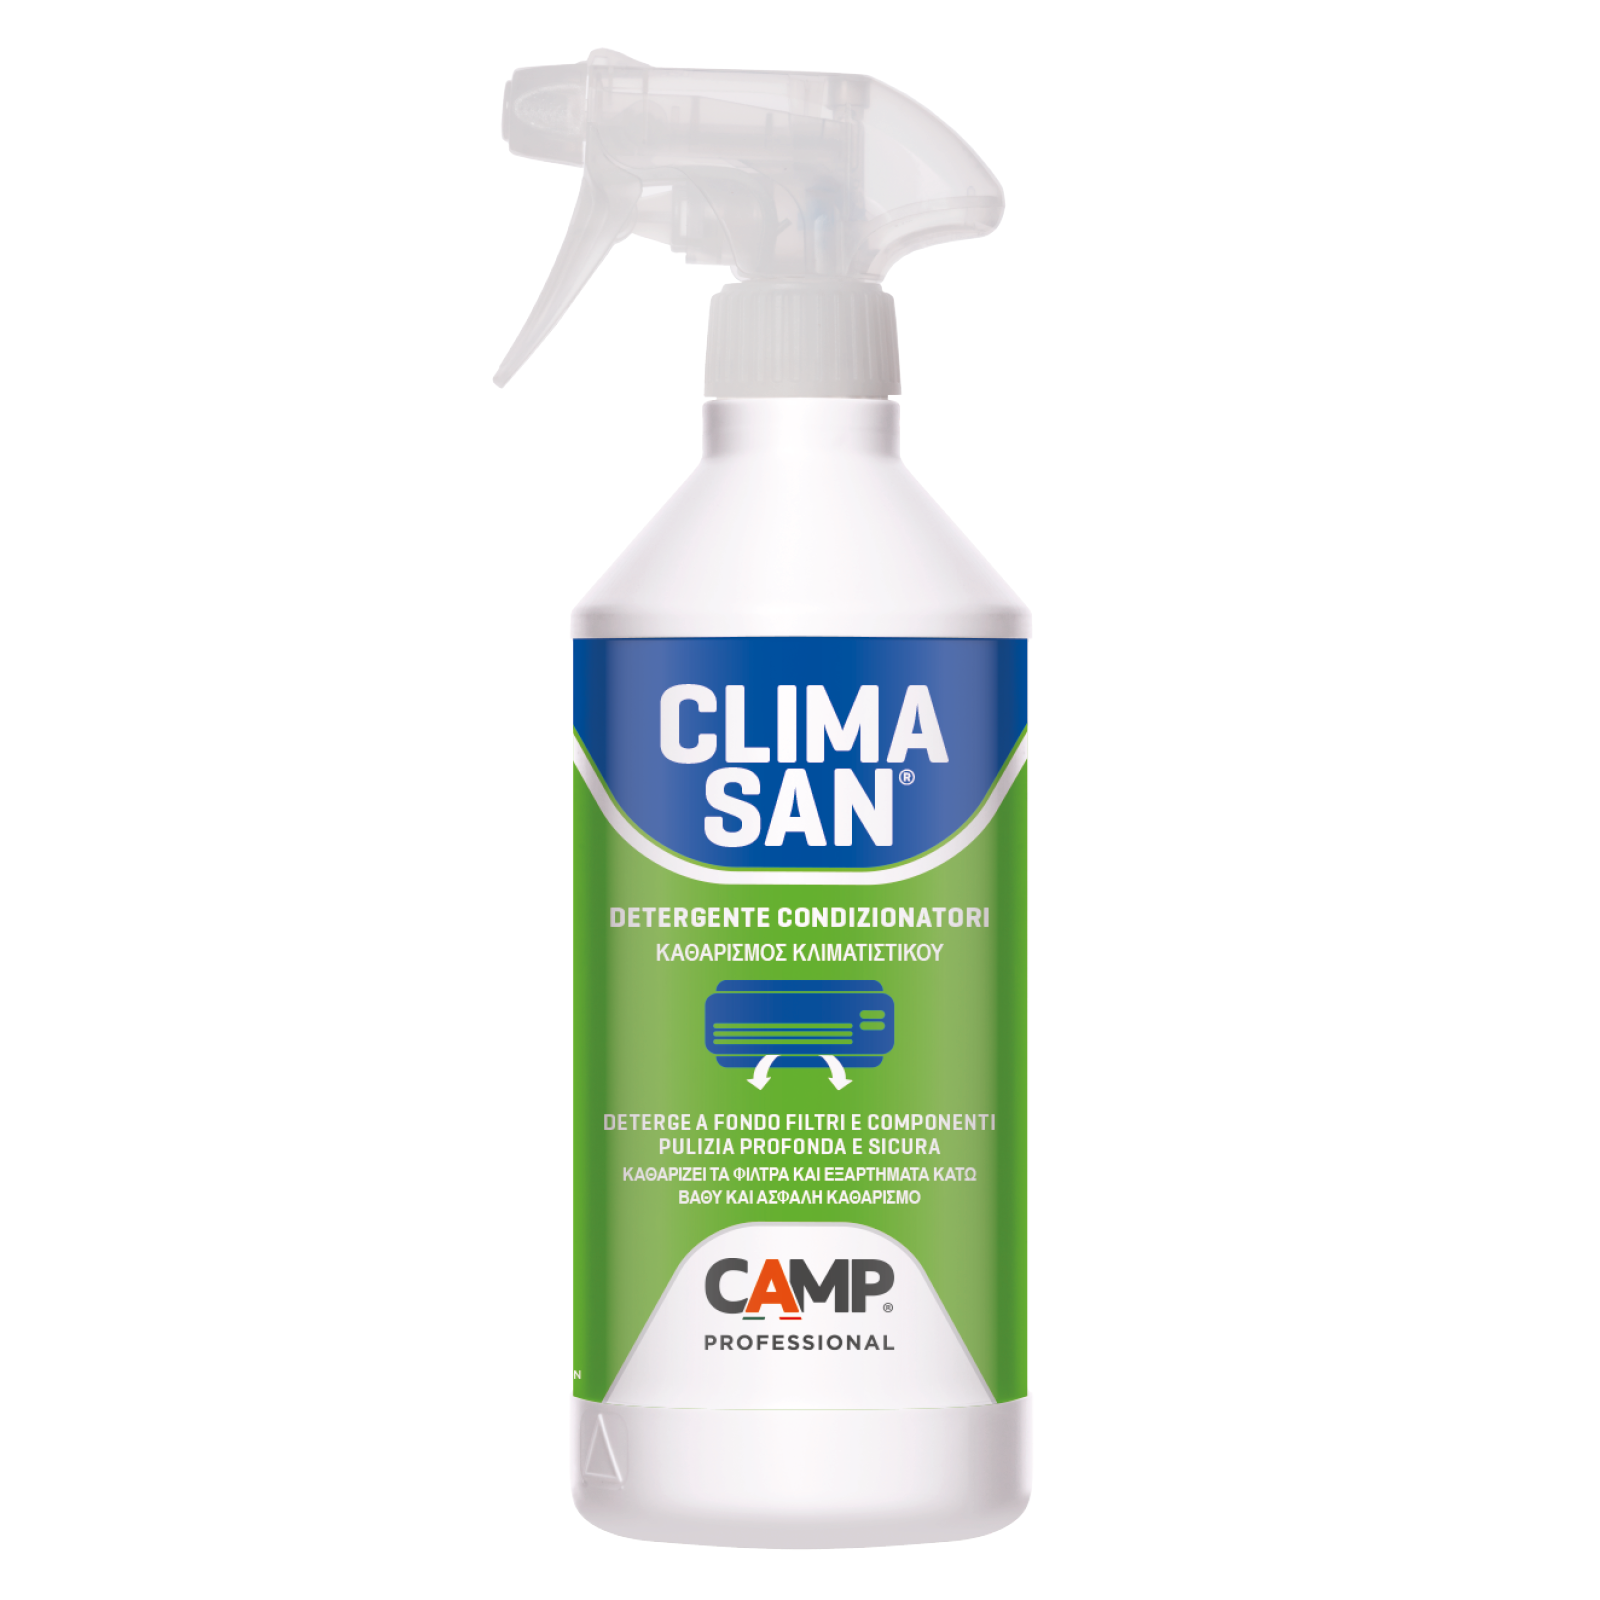 Climasan® detergente per condizionatori camp 750 ml spray – F.lli Granato  S.R.L.